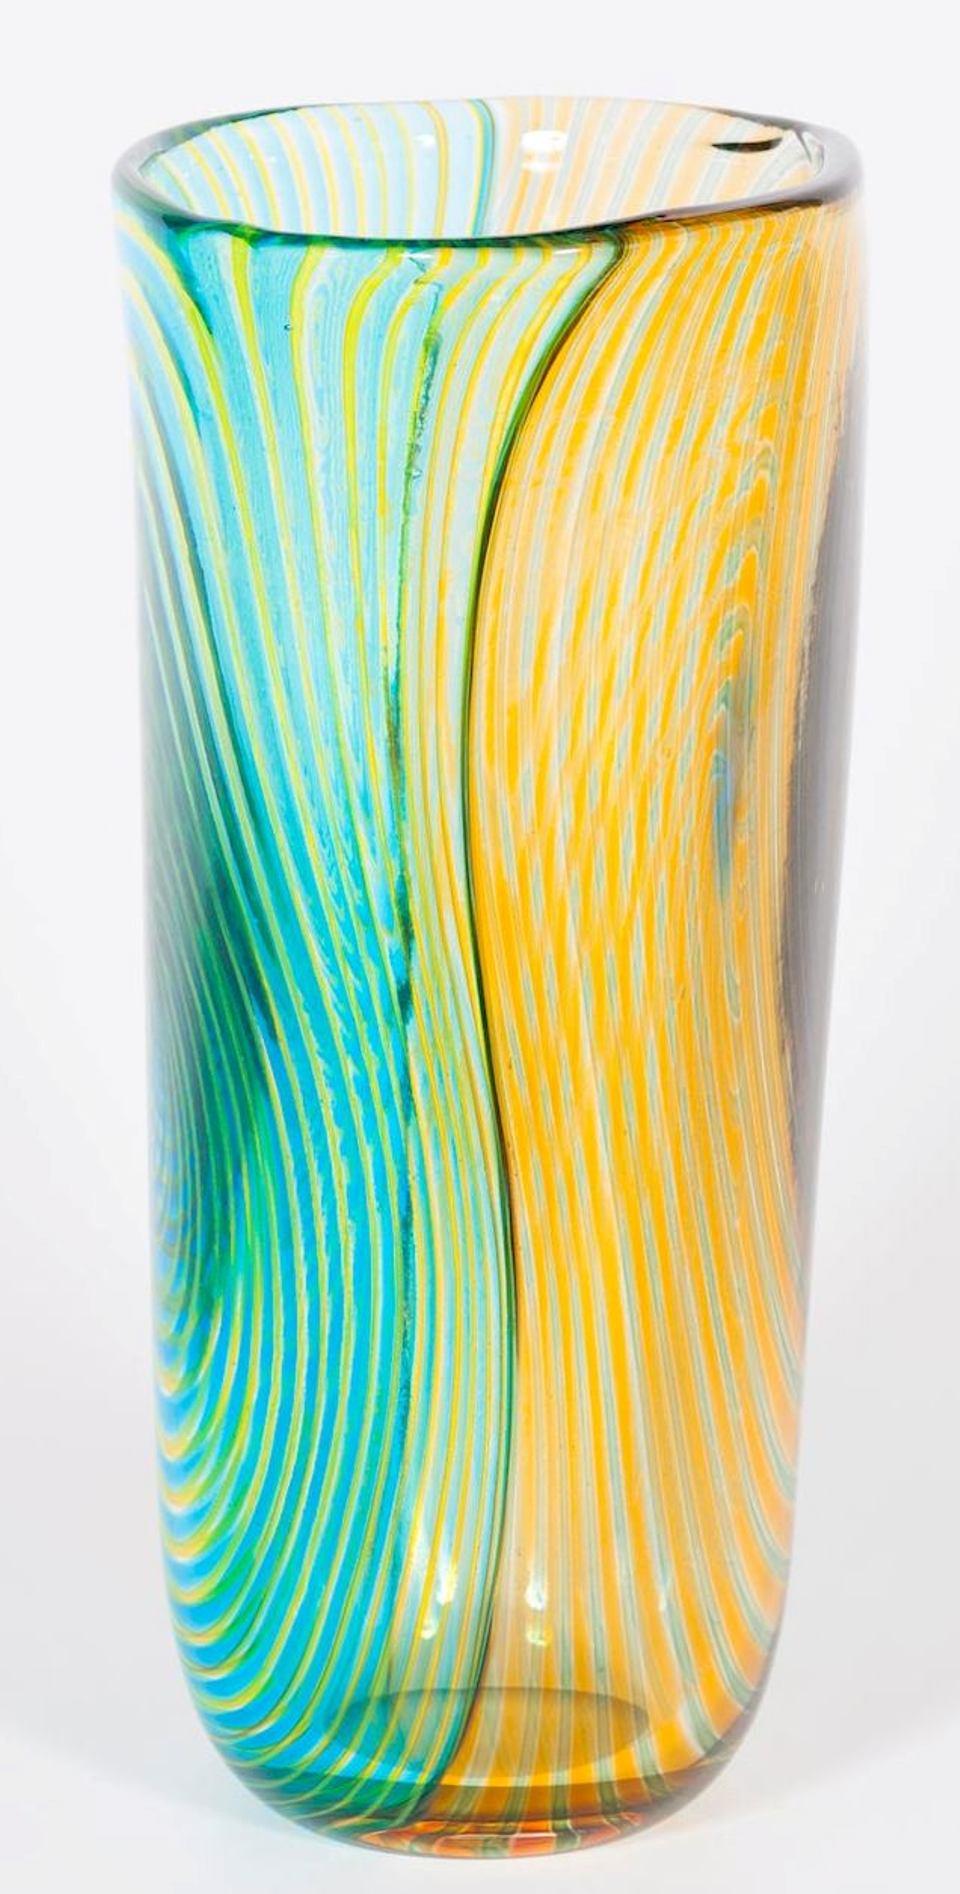 Gestreifte Vase aus geblasenem Murano-Glas, grün-orange und hellblau, 1990er Jahre, Italien.
Dies ist eine einzigartige gestreifte Vase, mit doppelt gefärbten Seiten und Streifen im Inneren der geblasenen Technik. Die Hälfte der Seite ist